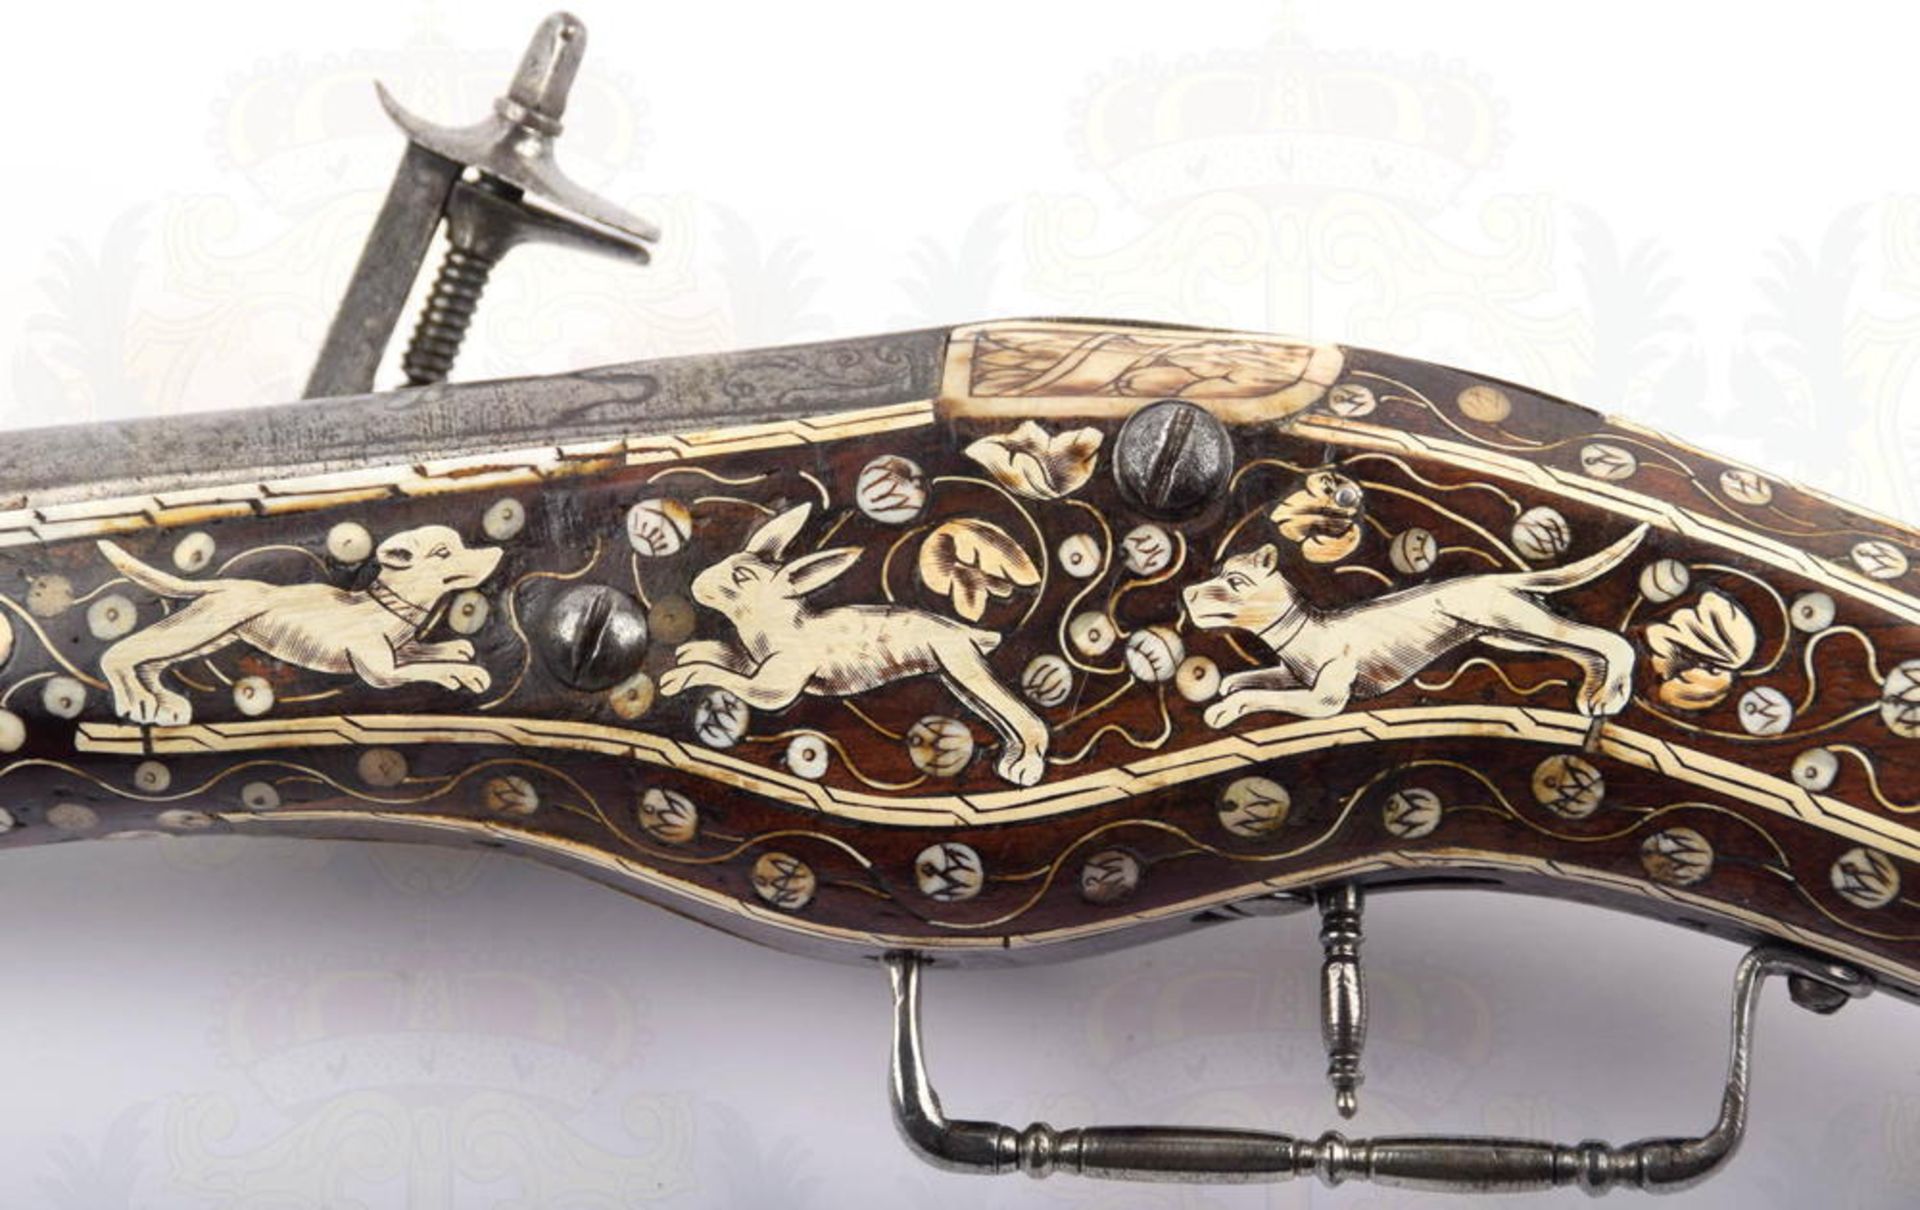 RADSCHLOSSPISTOLE, Luxusausführung um 1700, Rundlauf mit floralen Zierschnitten, ca. Kal. 15,5mm, im - Bild 9 aus 9